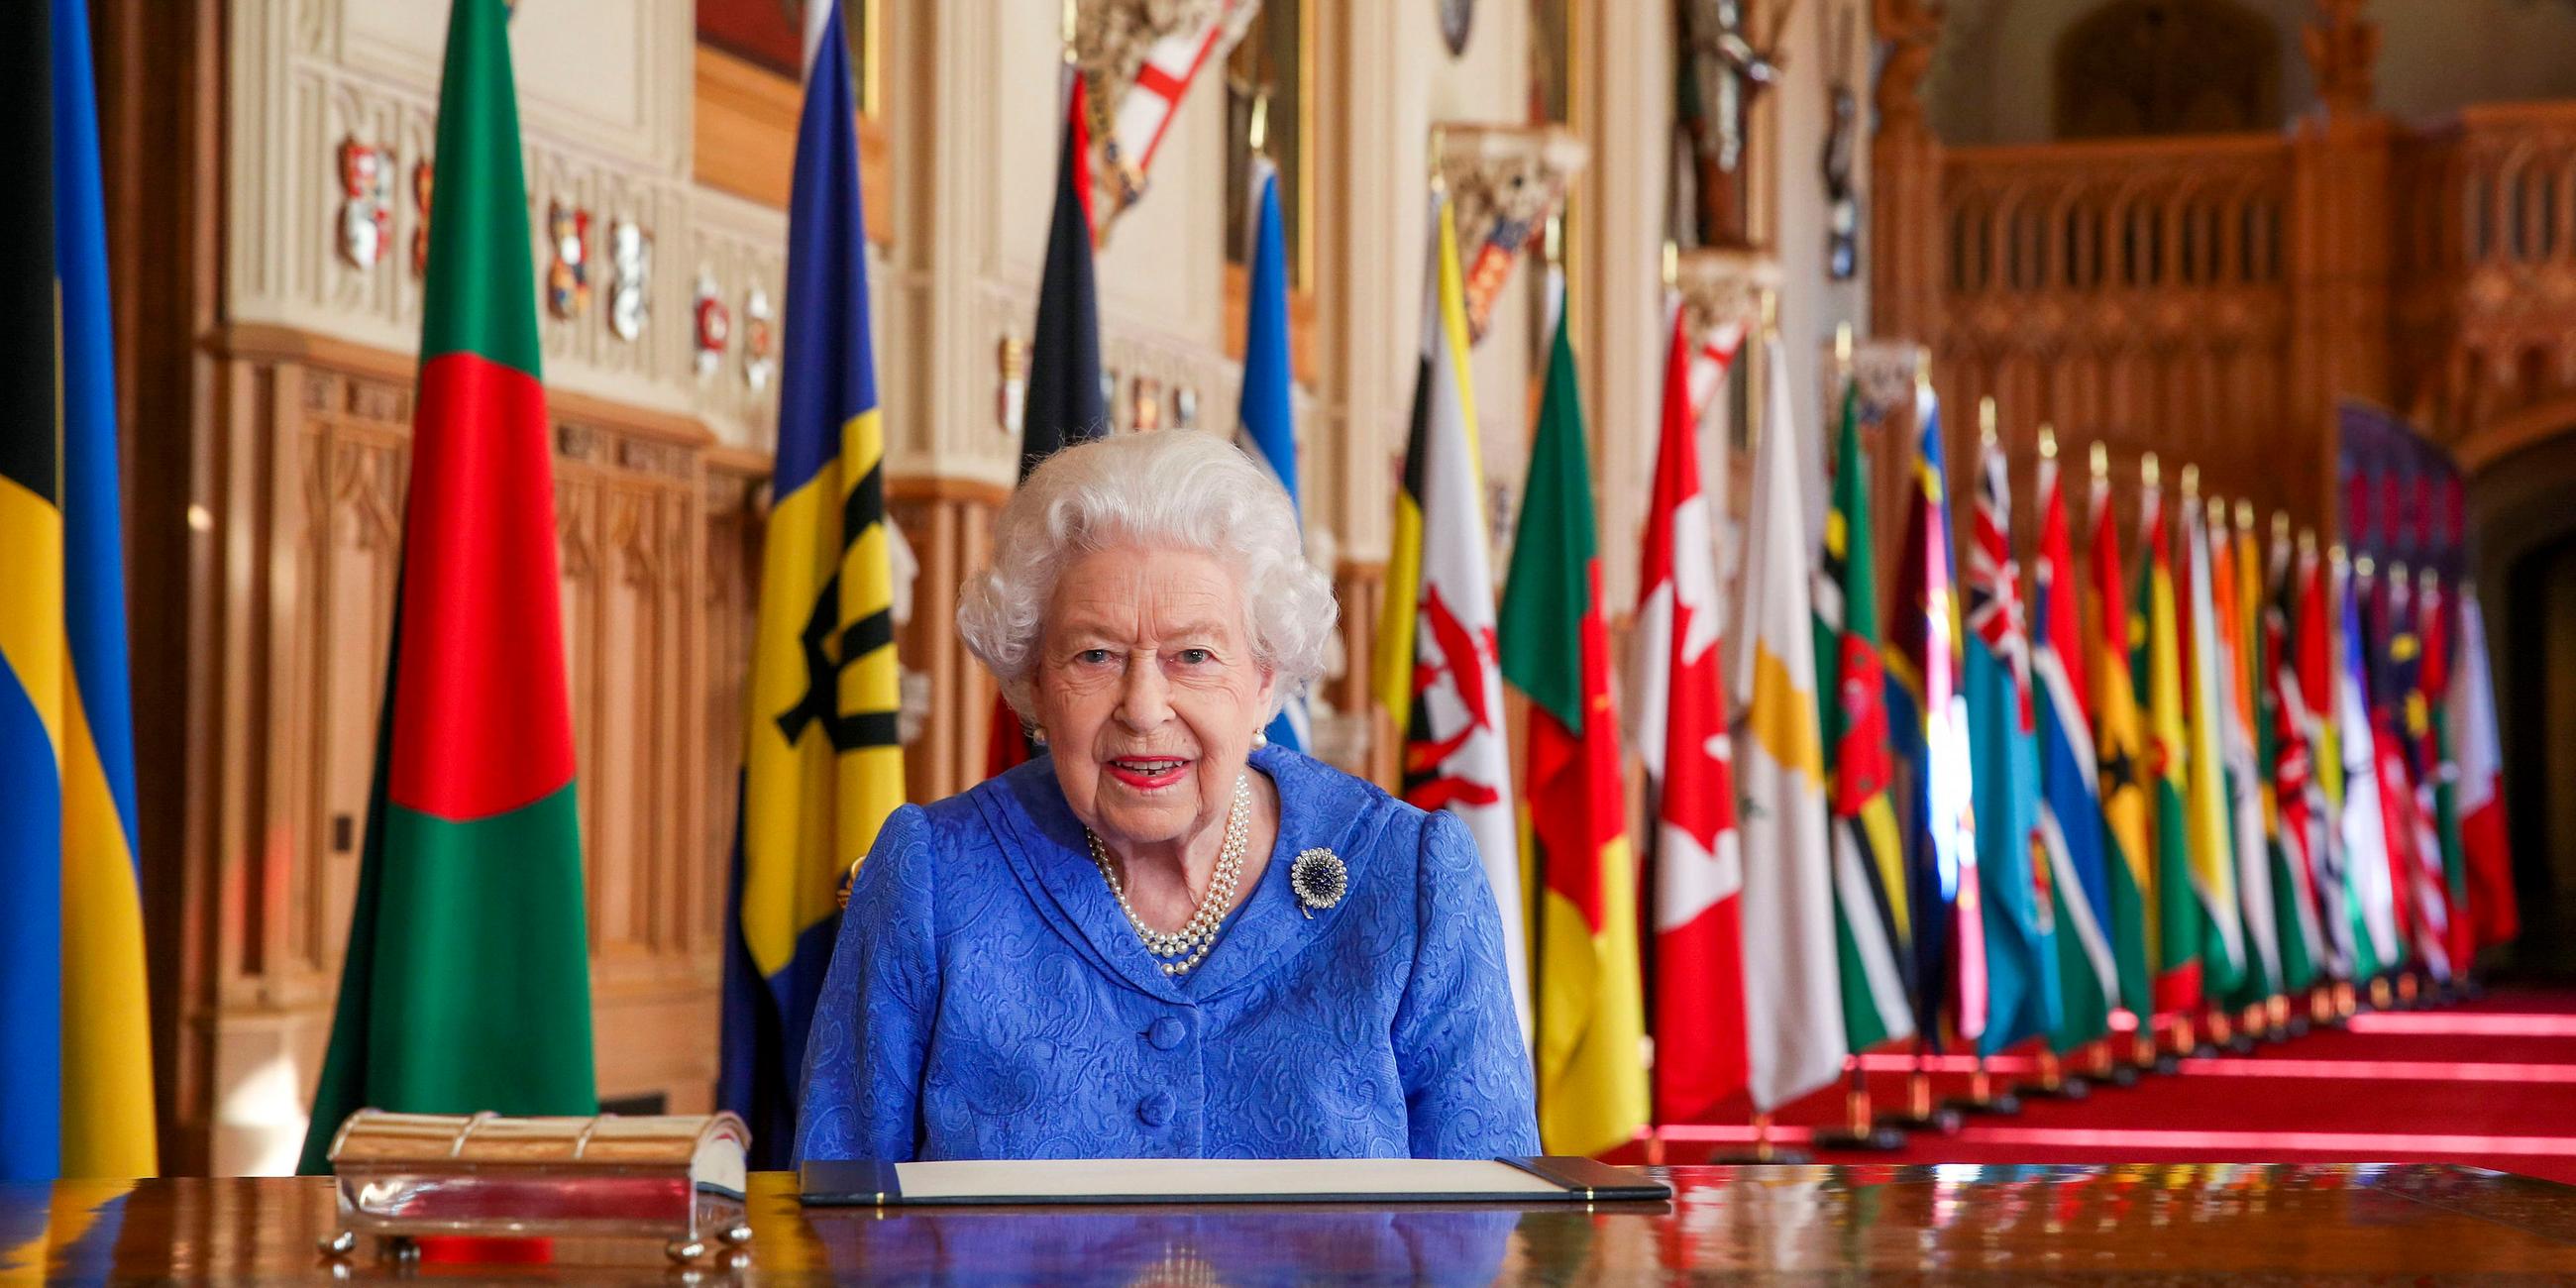 Commonwealth Day 2021: Die Queen vor verschiedenen Länderflaagen an einem Schreibtisch